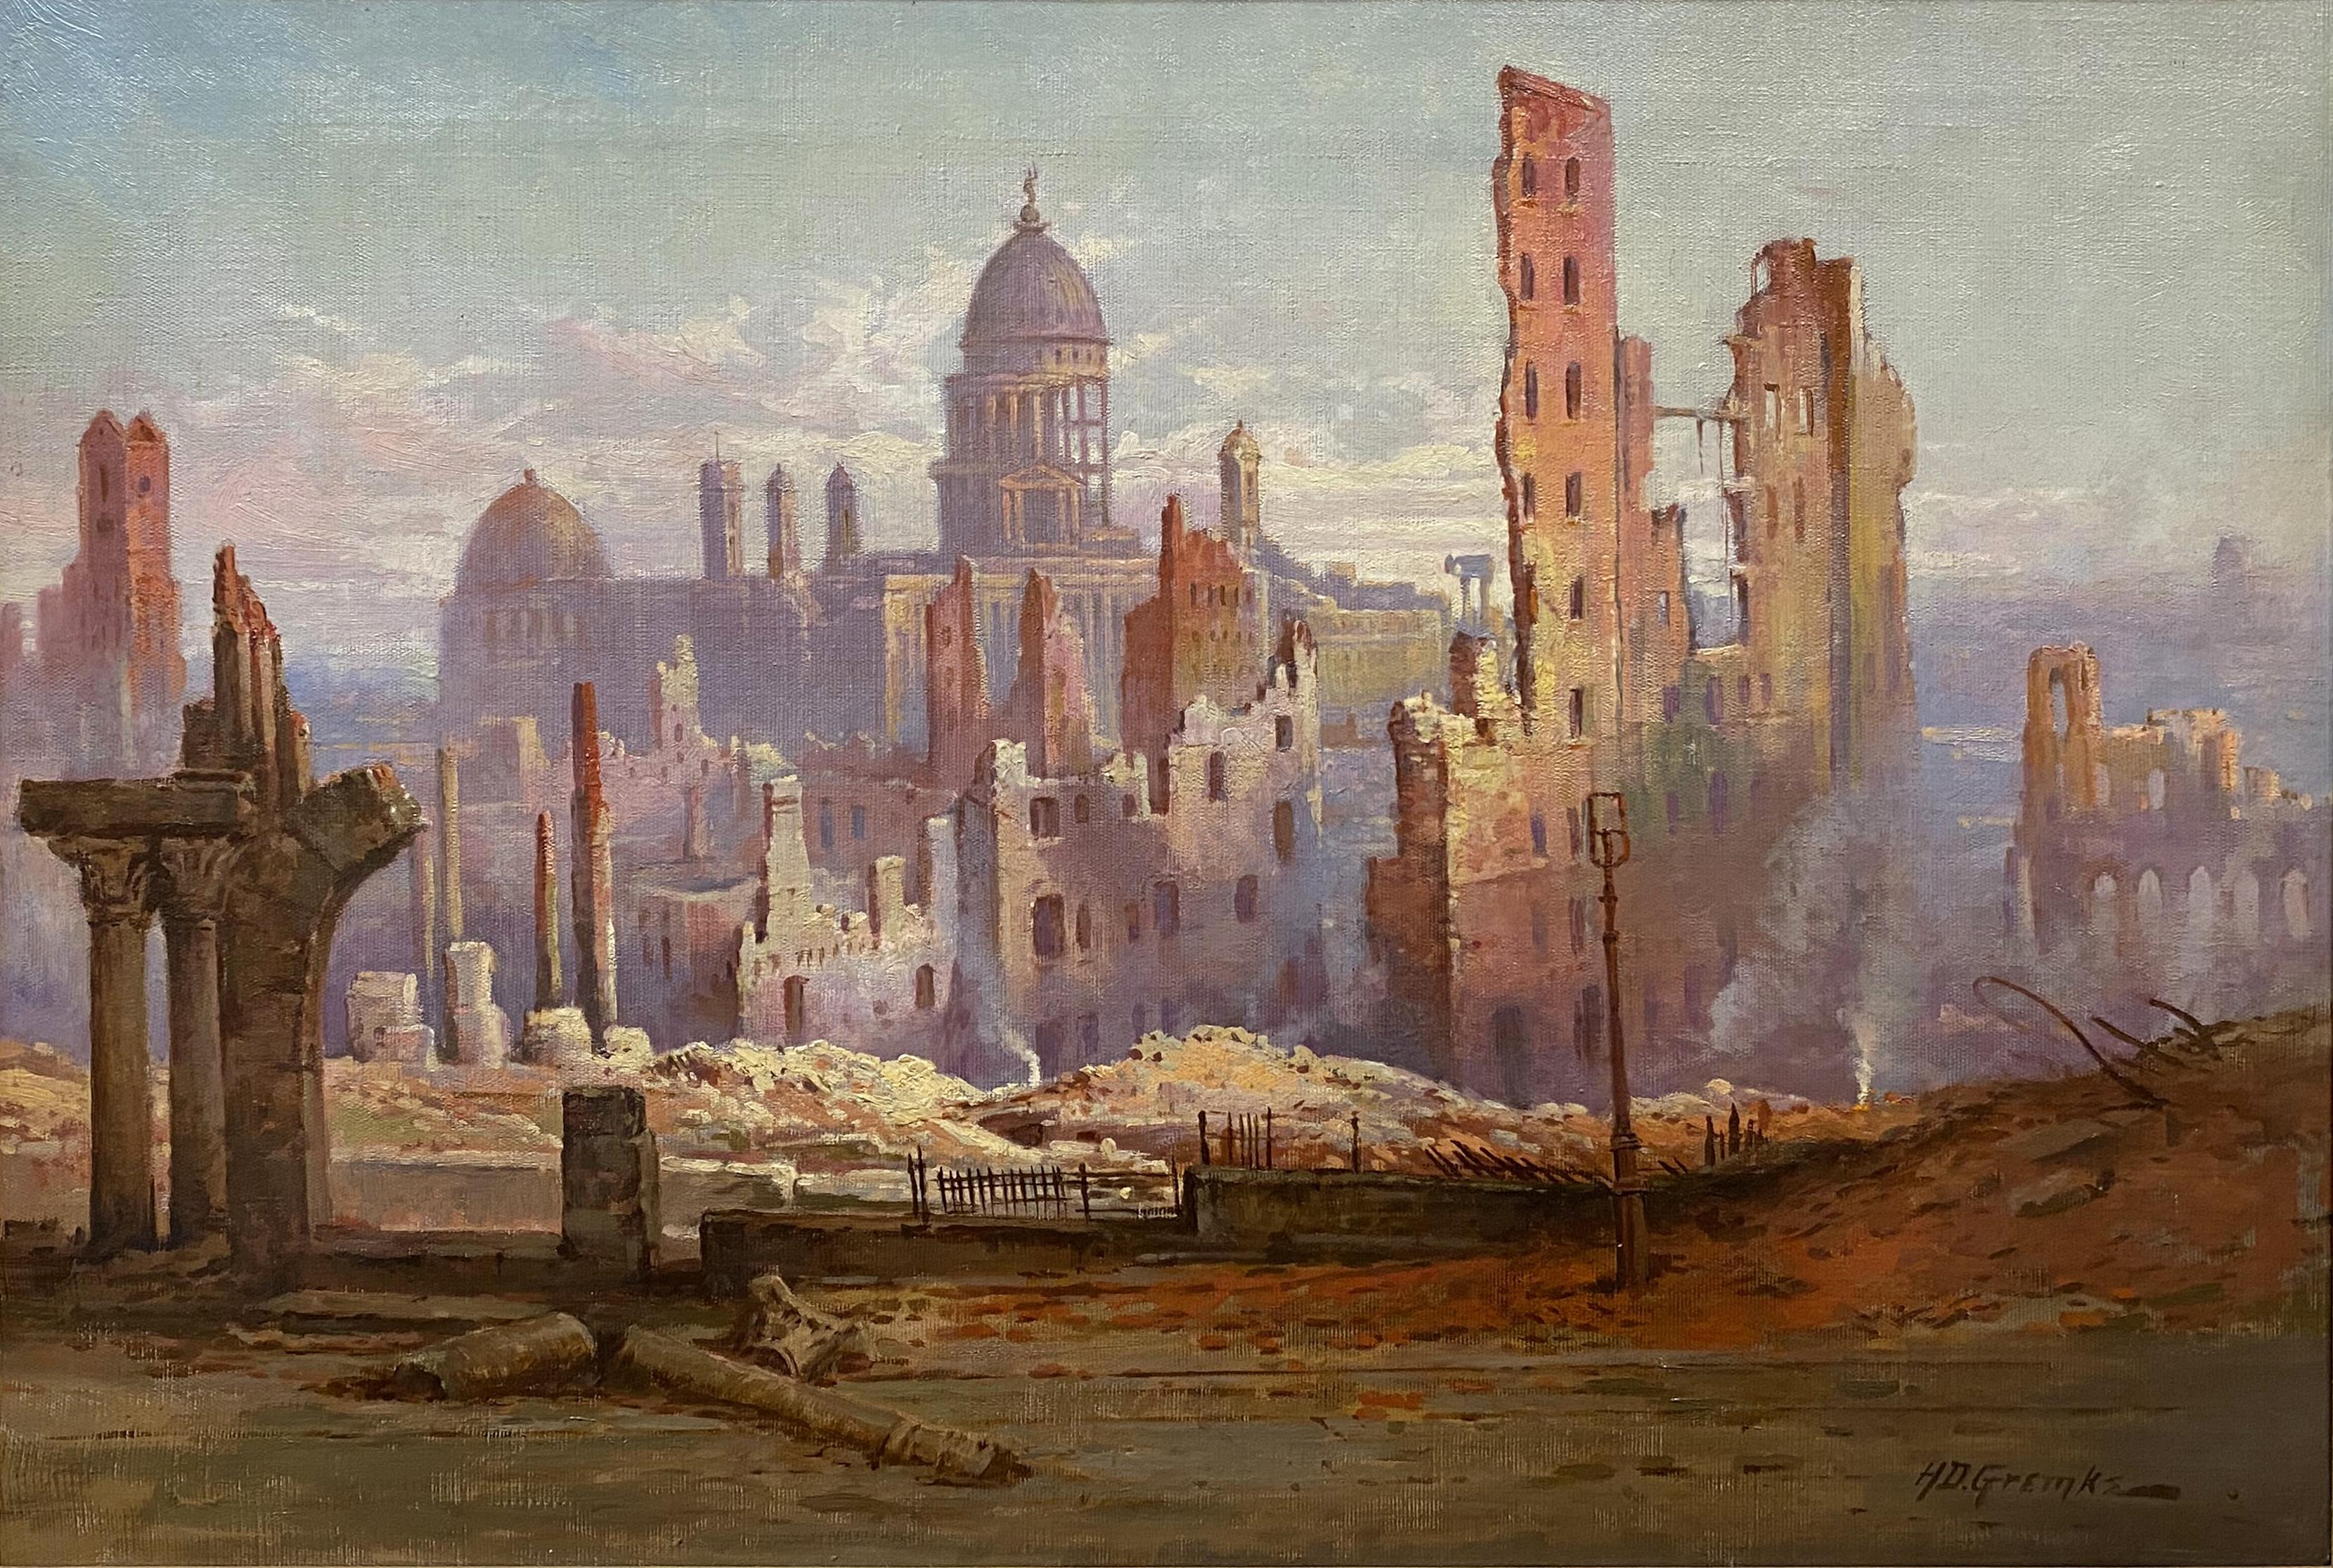  Die Ruinen des Erdbebens und des Brandes von San Francisco – Painting von Henry Deidrich Gremke